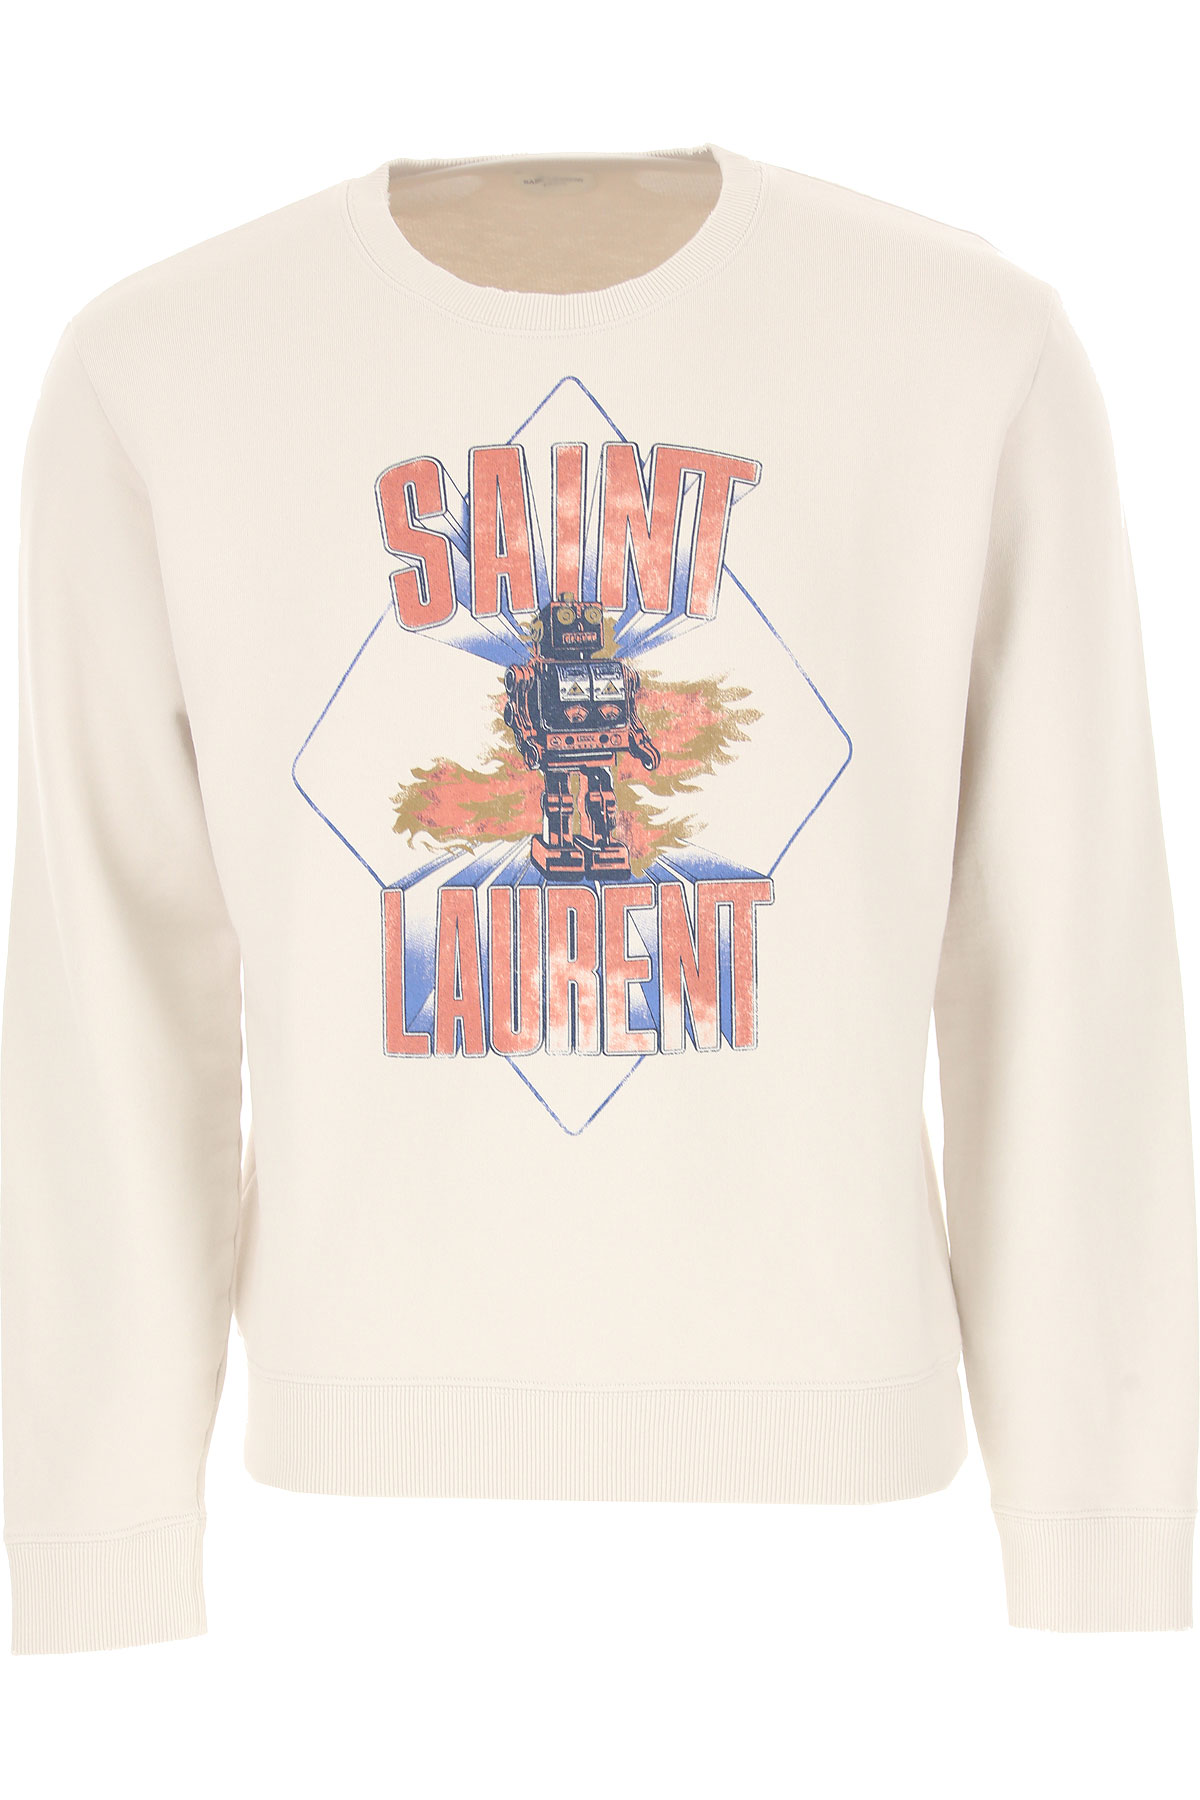 Yves Saint Laurent Sweatshirt für Herren, Kapuzenpulli, Hoodie, Sweats Günstig im Outlet Sale, Lehmfarben, Baumwolle, 2017, M XL